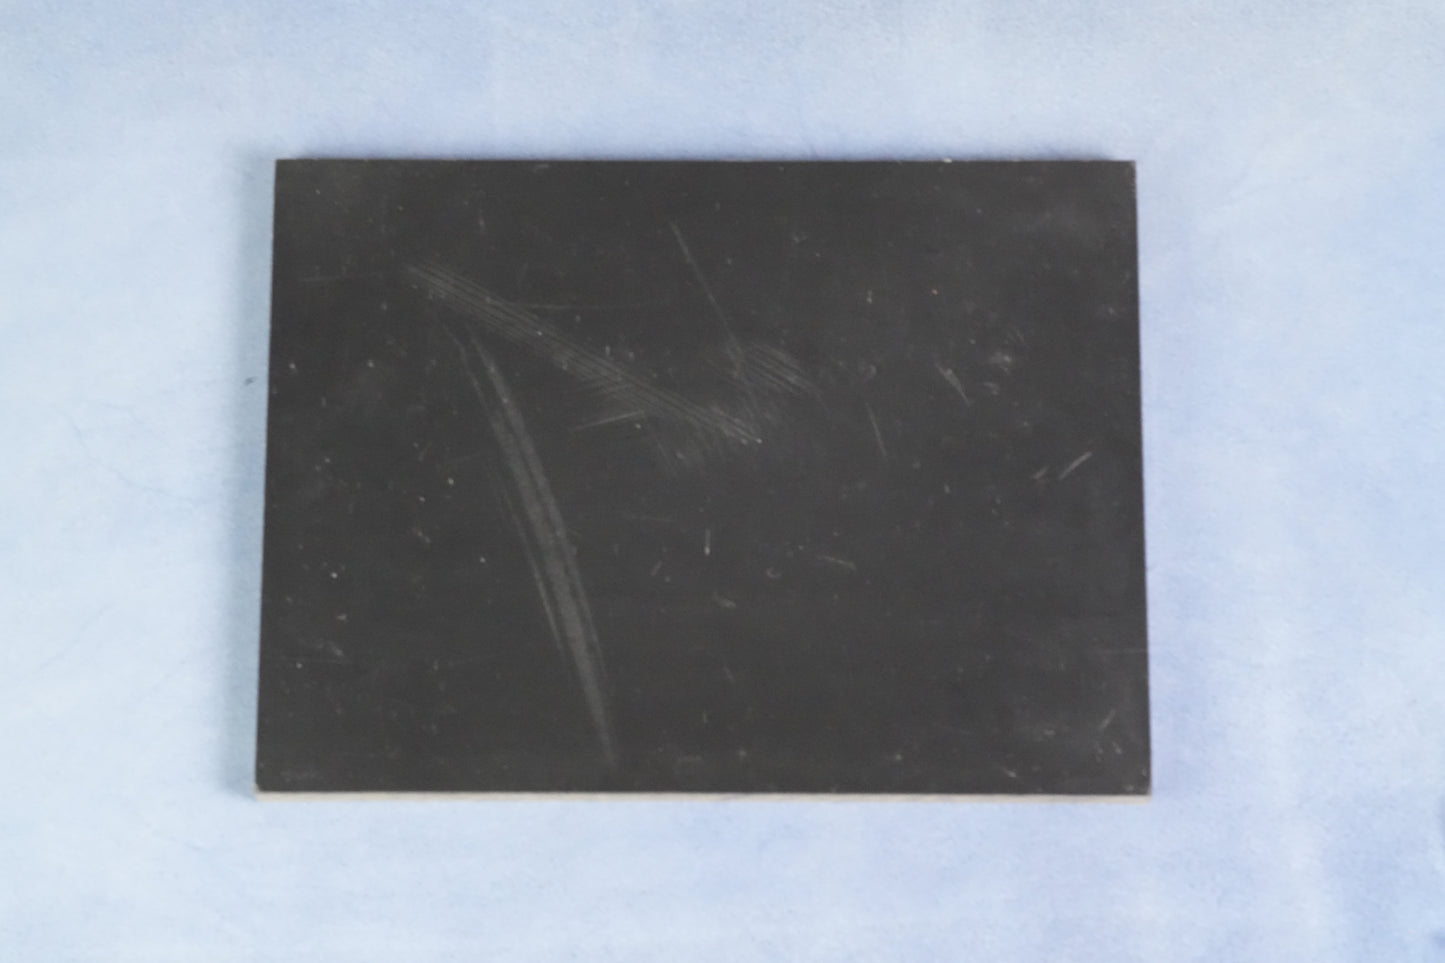 Black Poundo Board (S) - AL Leather Supply